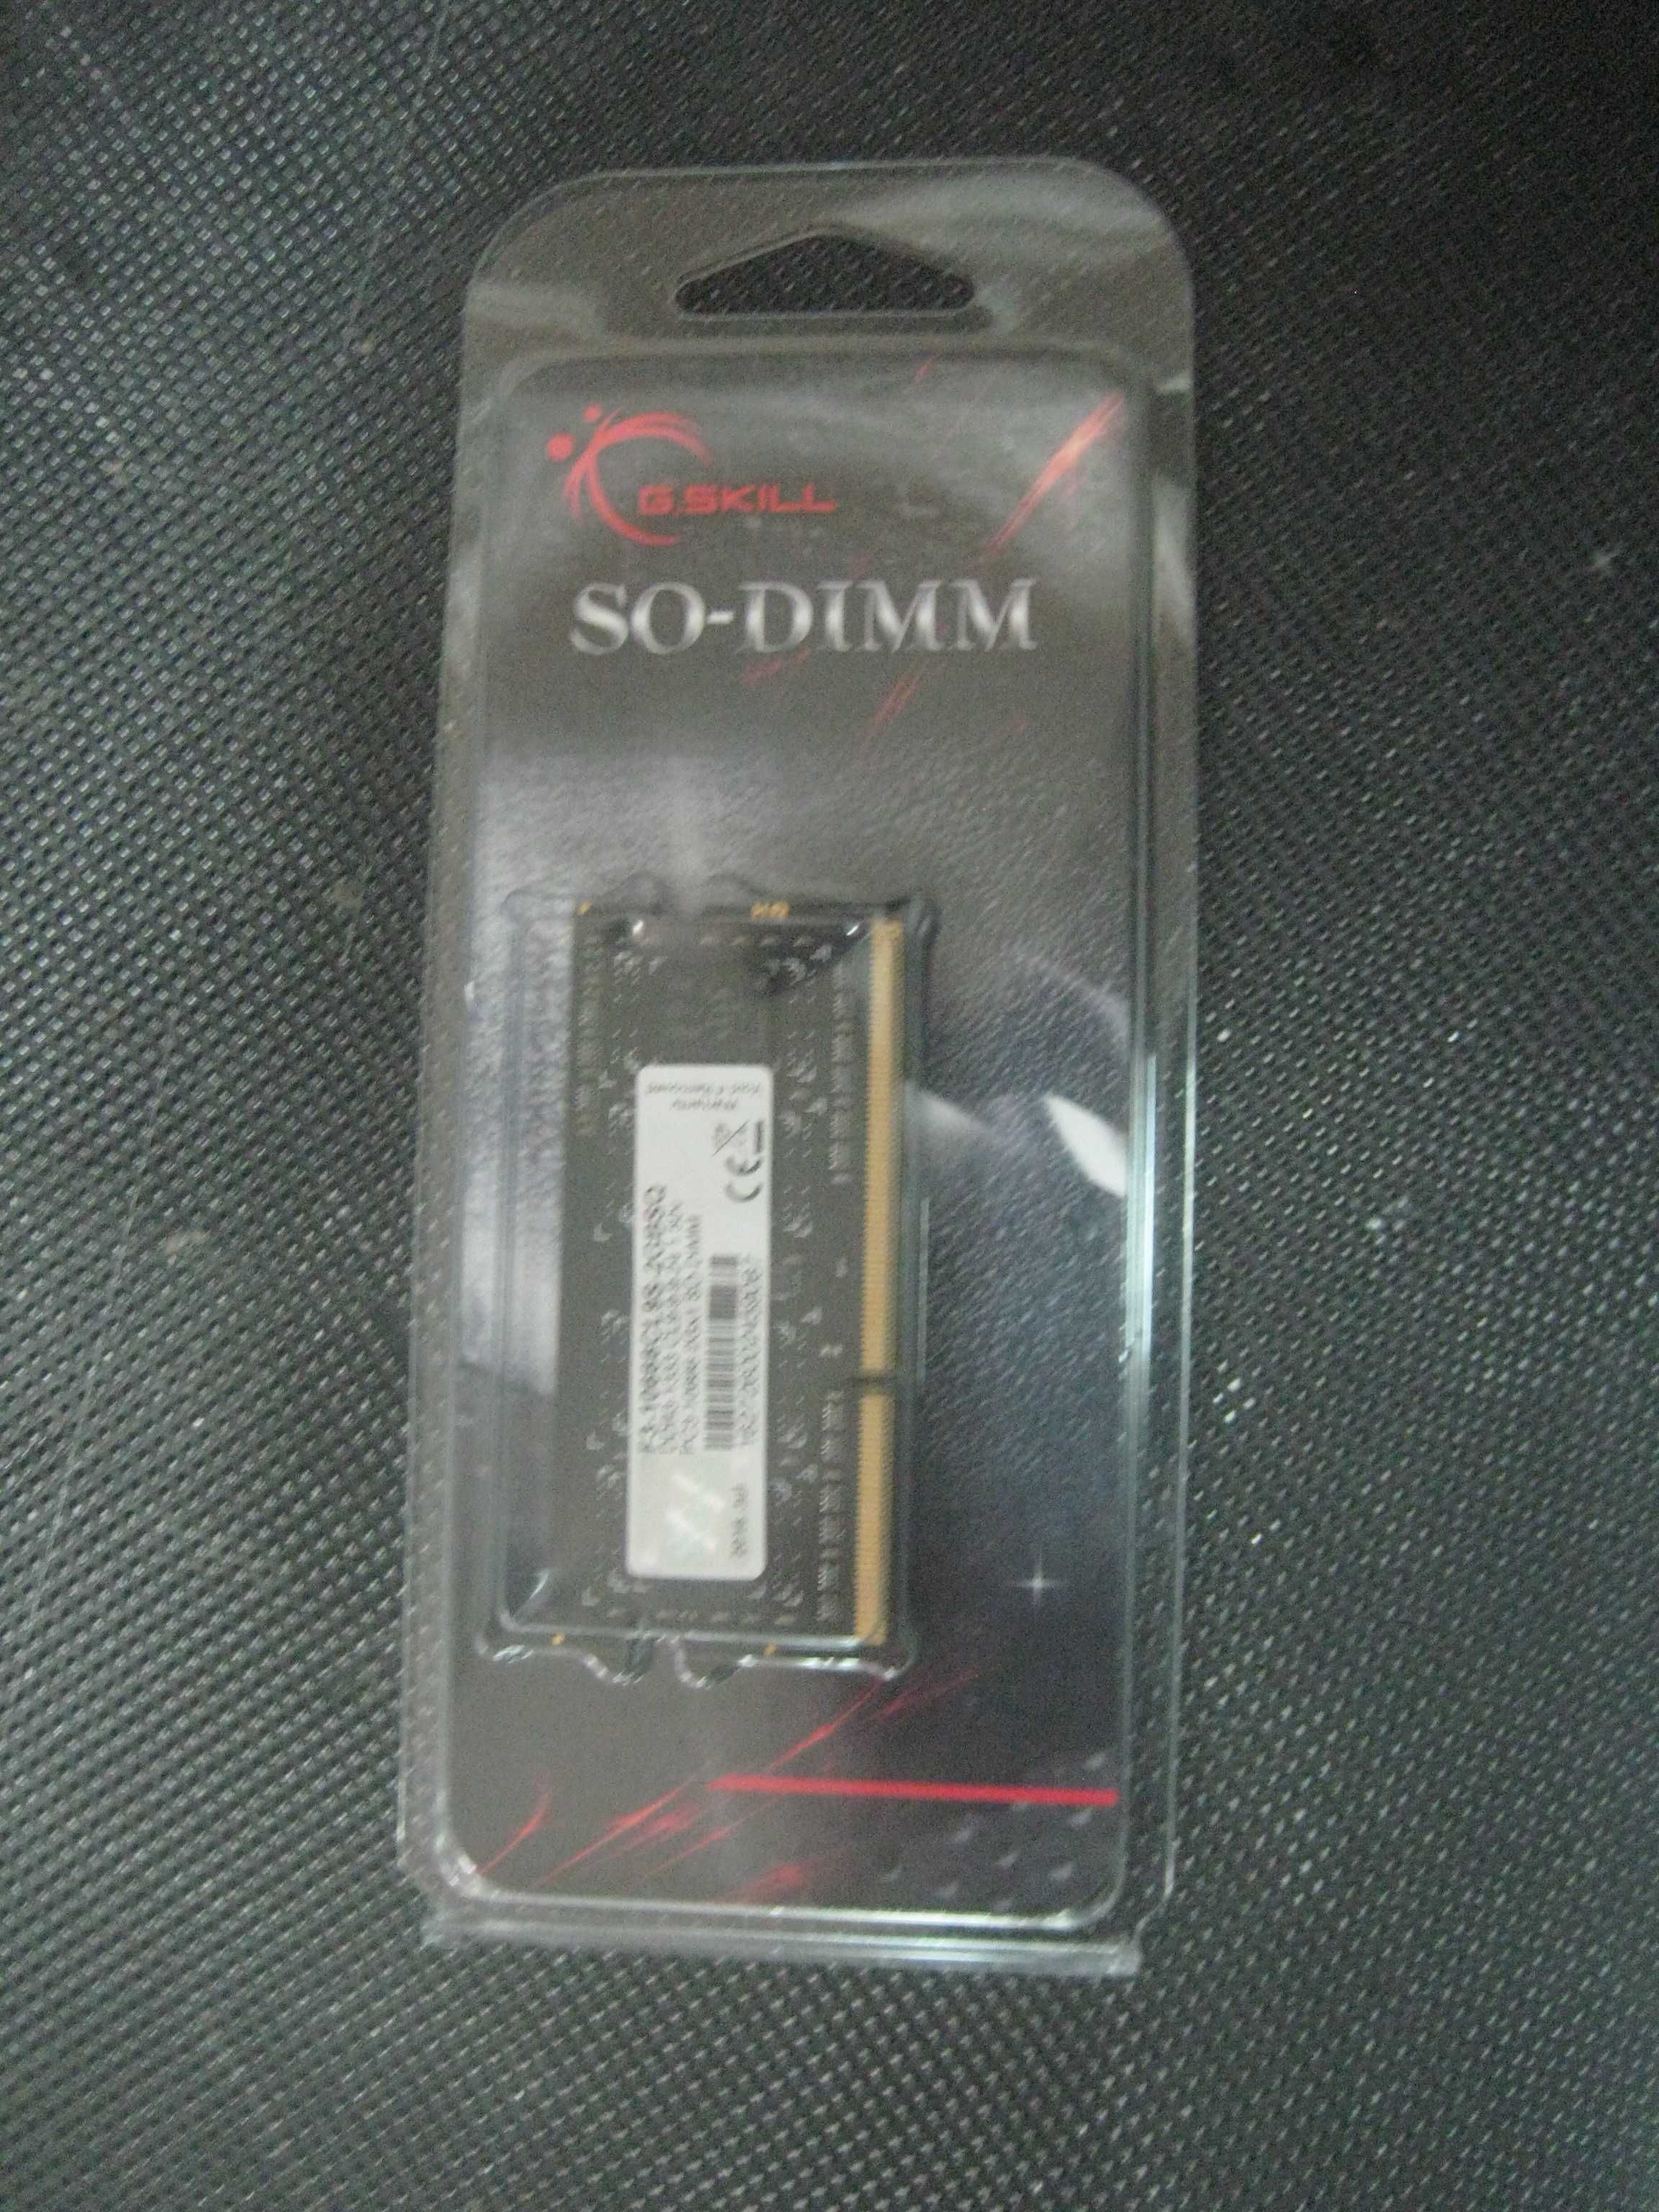 memórias so-dimm DDR3 1333 g.skill 2GB